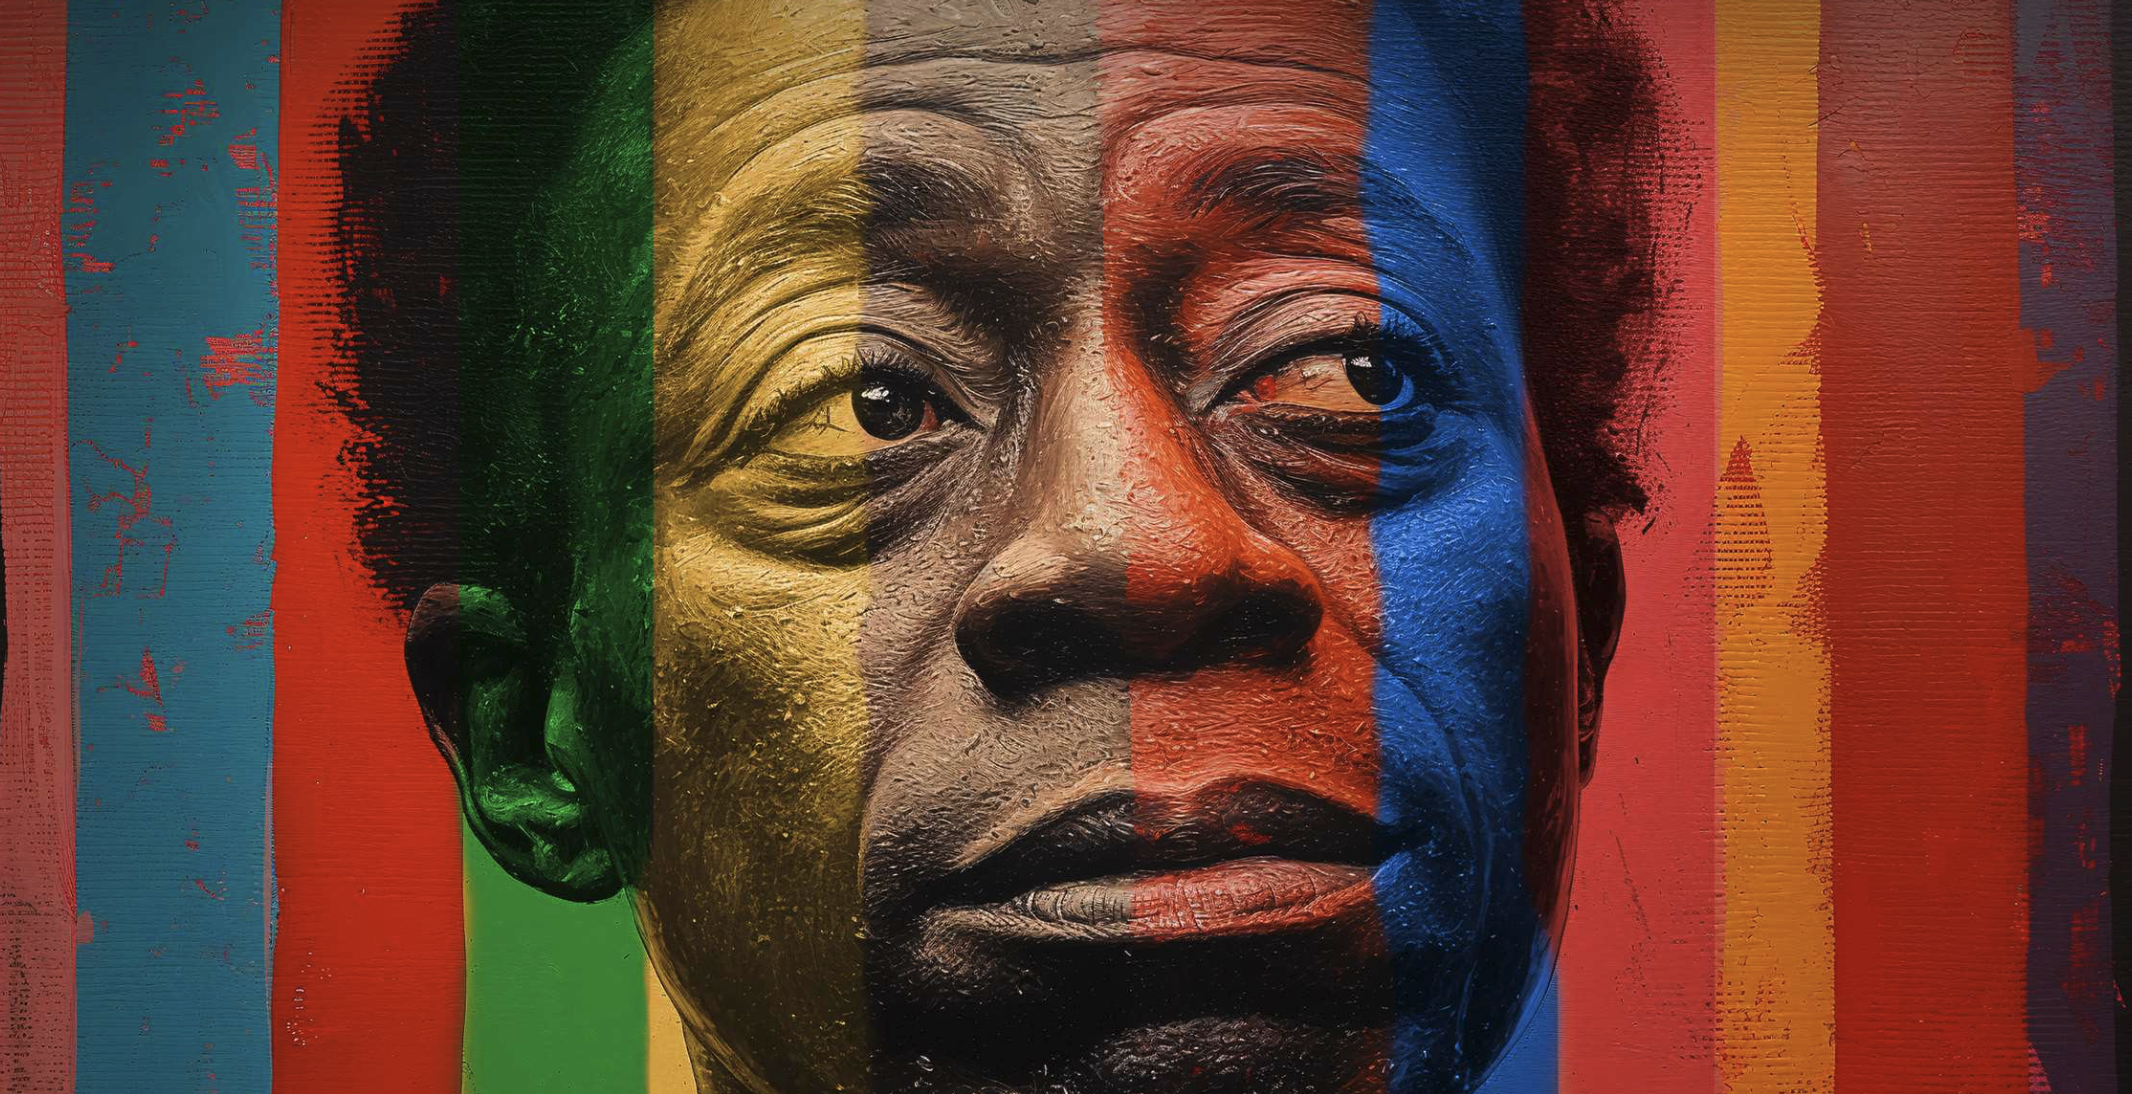 En italiensk podcast hyllar författaren och aktivisten James Baldwin under Pride-månaden